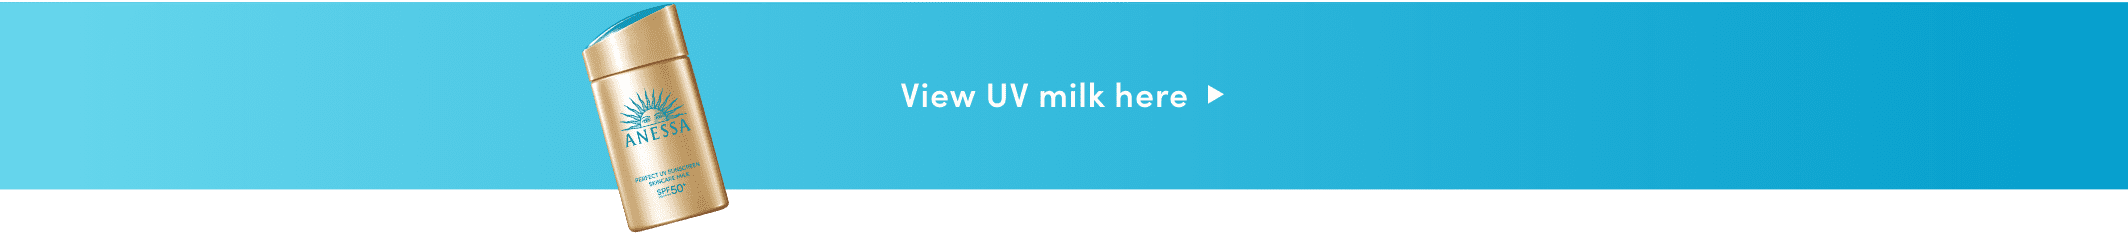 View UV milk here